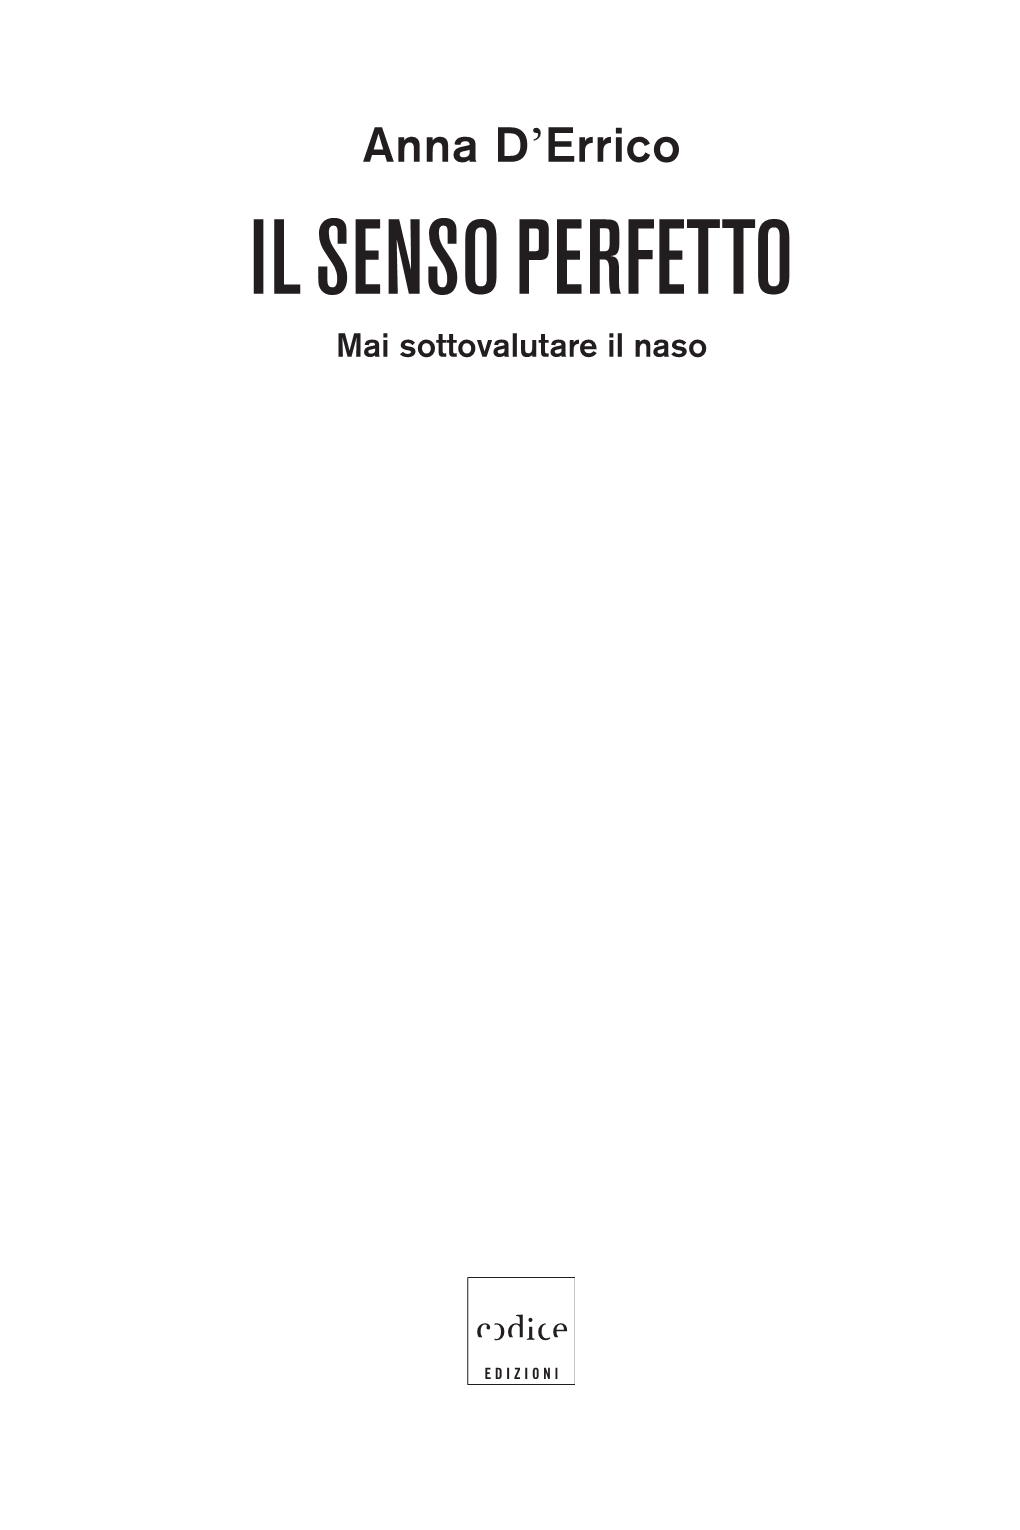 IL SENSO PERFETTO Mai Sottovalutare Il Naso © 2019 Codice Edizioni, Torino ISBN 978-88-7578-811-7 Tutti I Diritti Sono Riservati